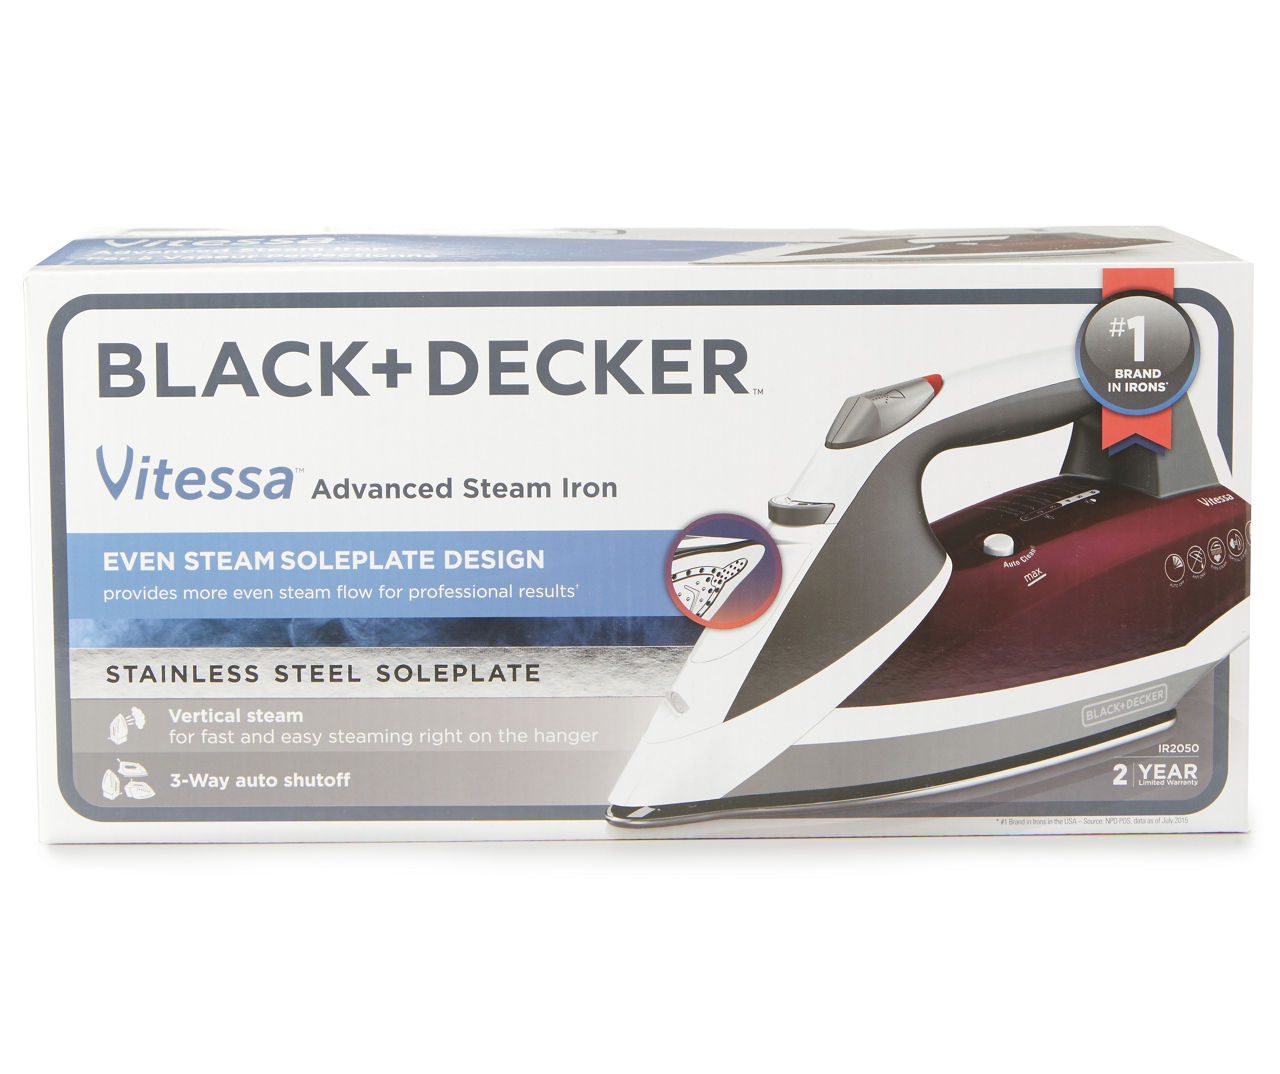 Black + Decker Vitessa Advanced Steam Iron